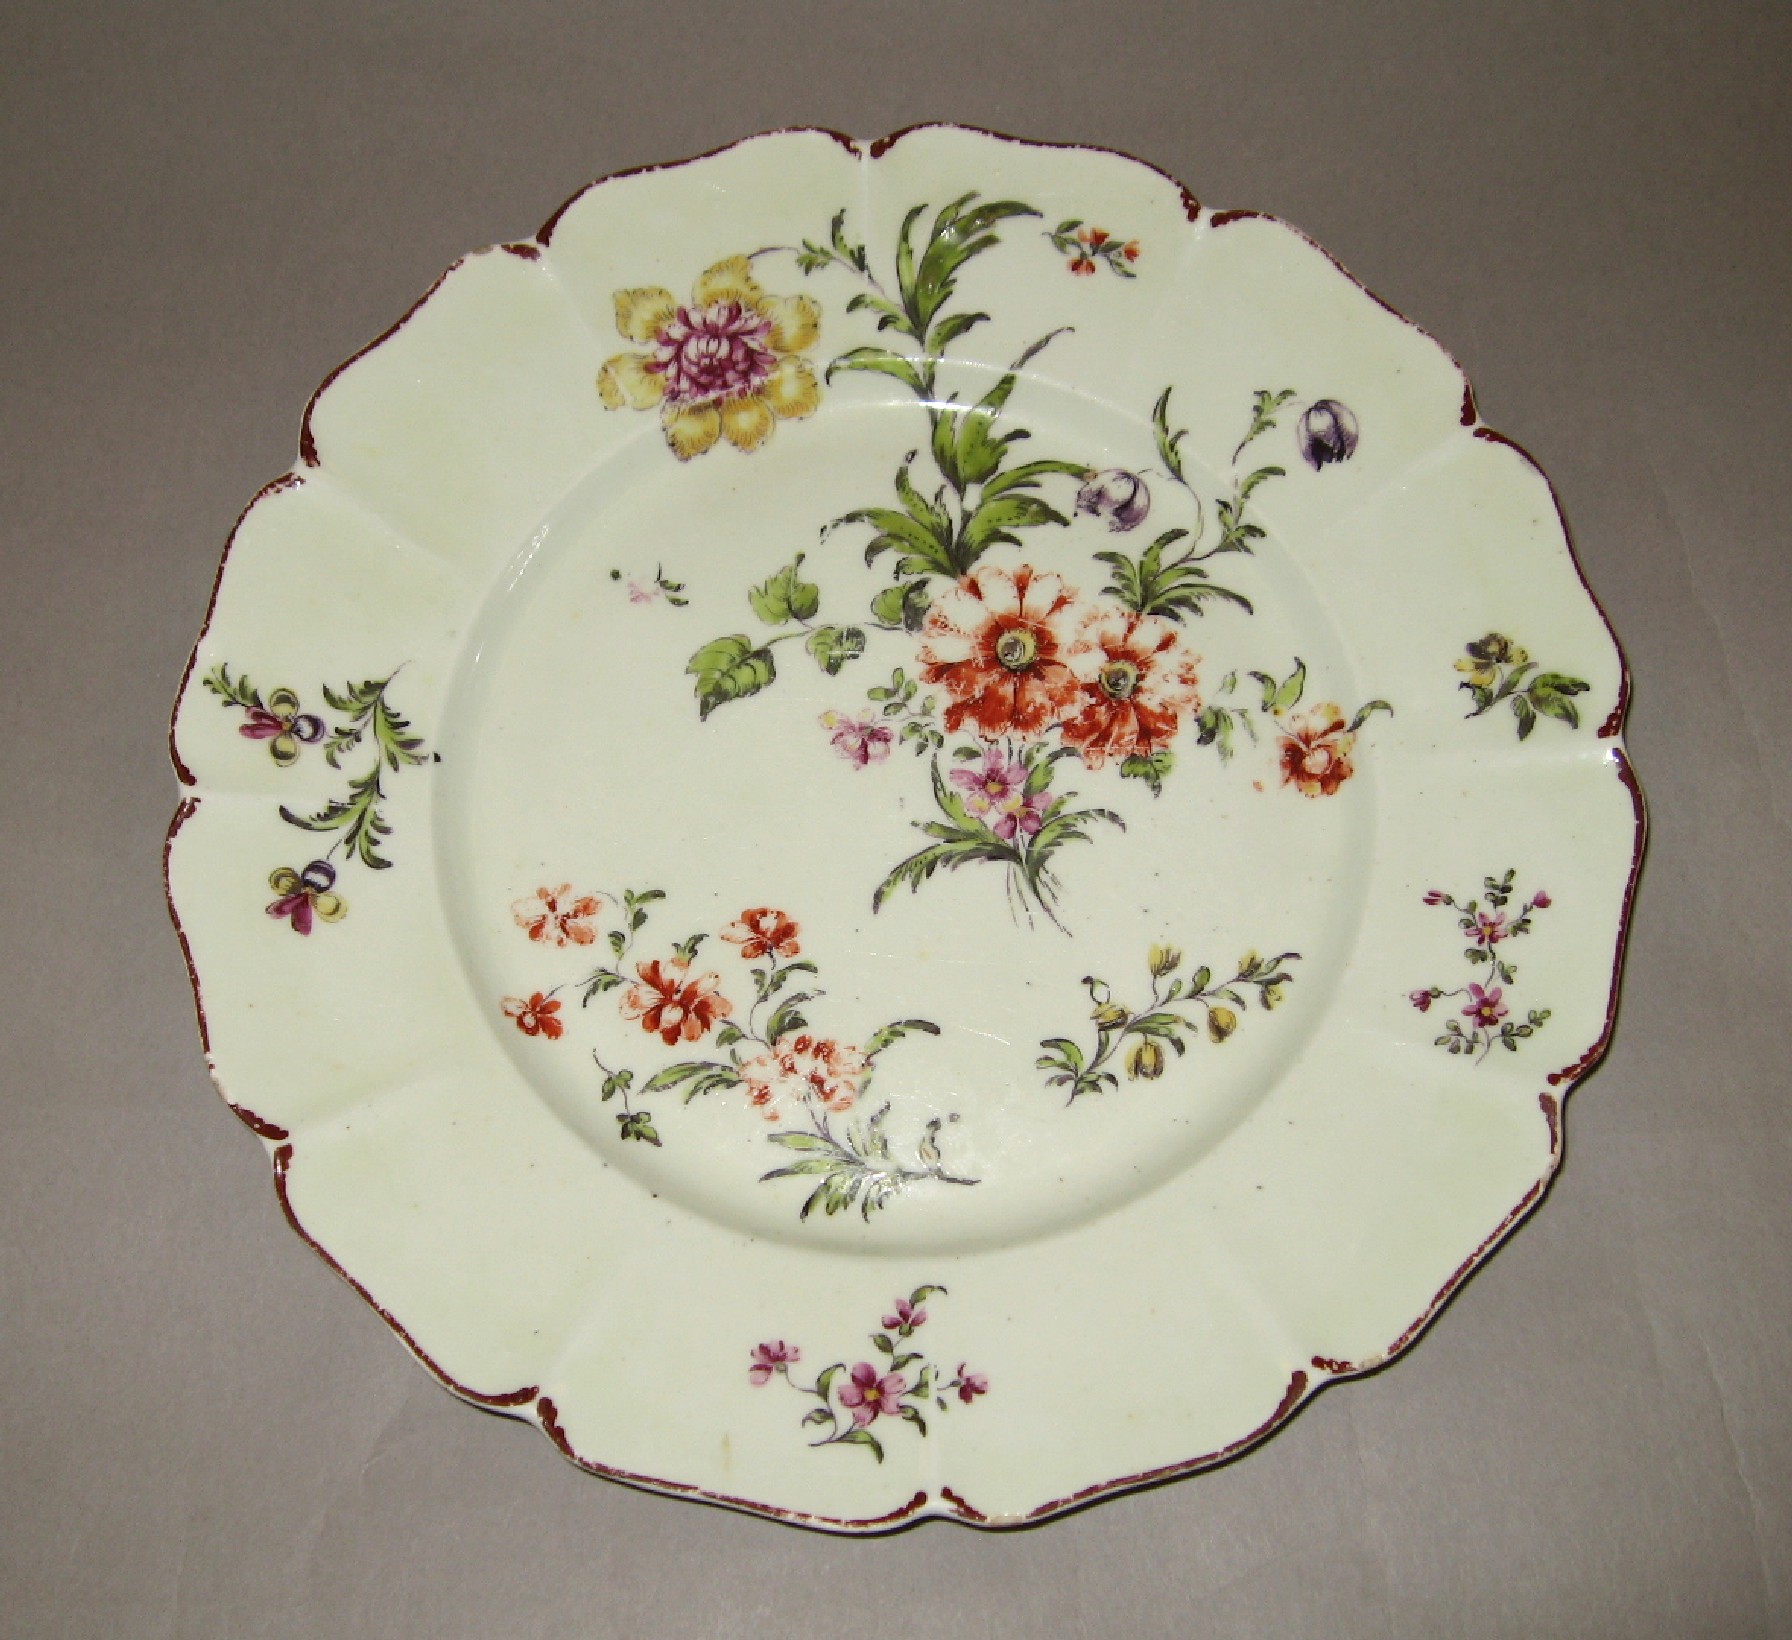 1982.0149 Soft-paste porcelain plate